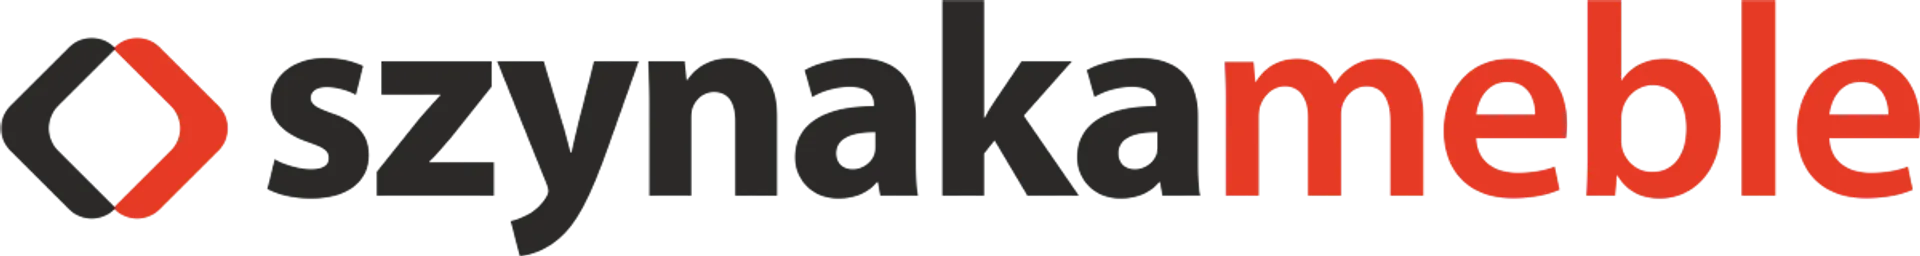 SZYNAKA MEBLE logo